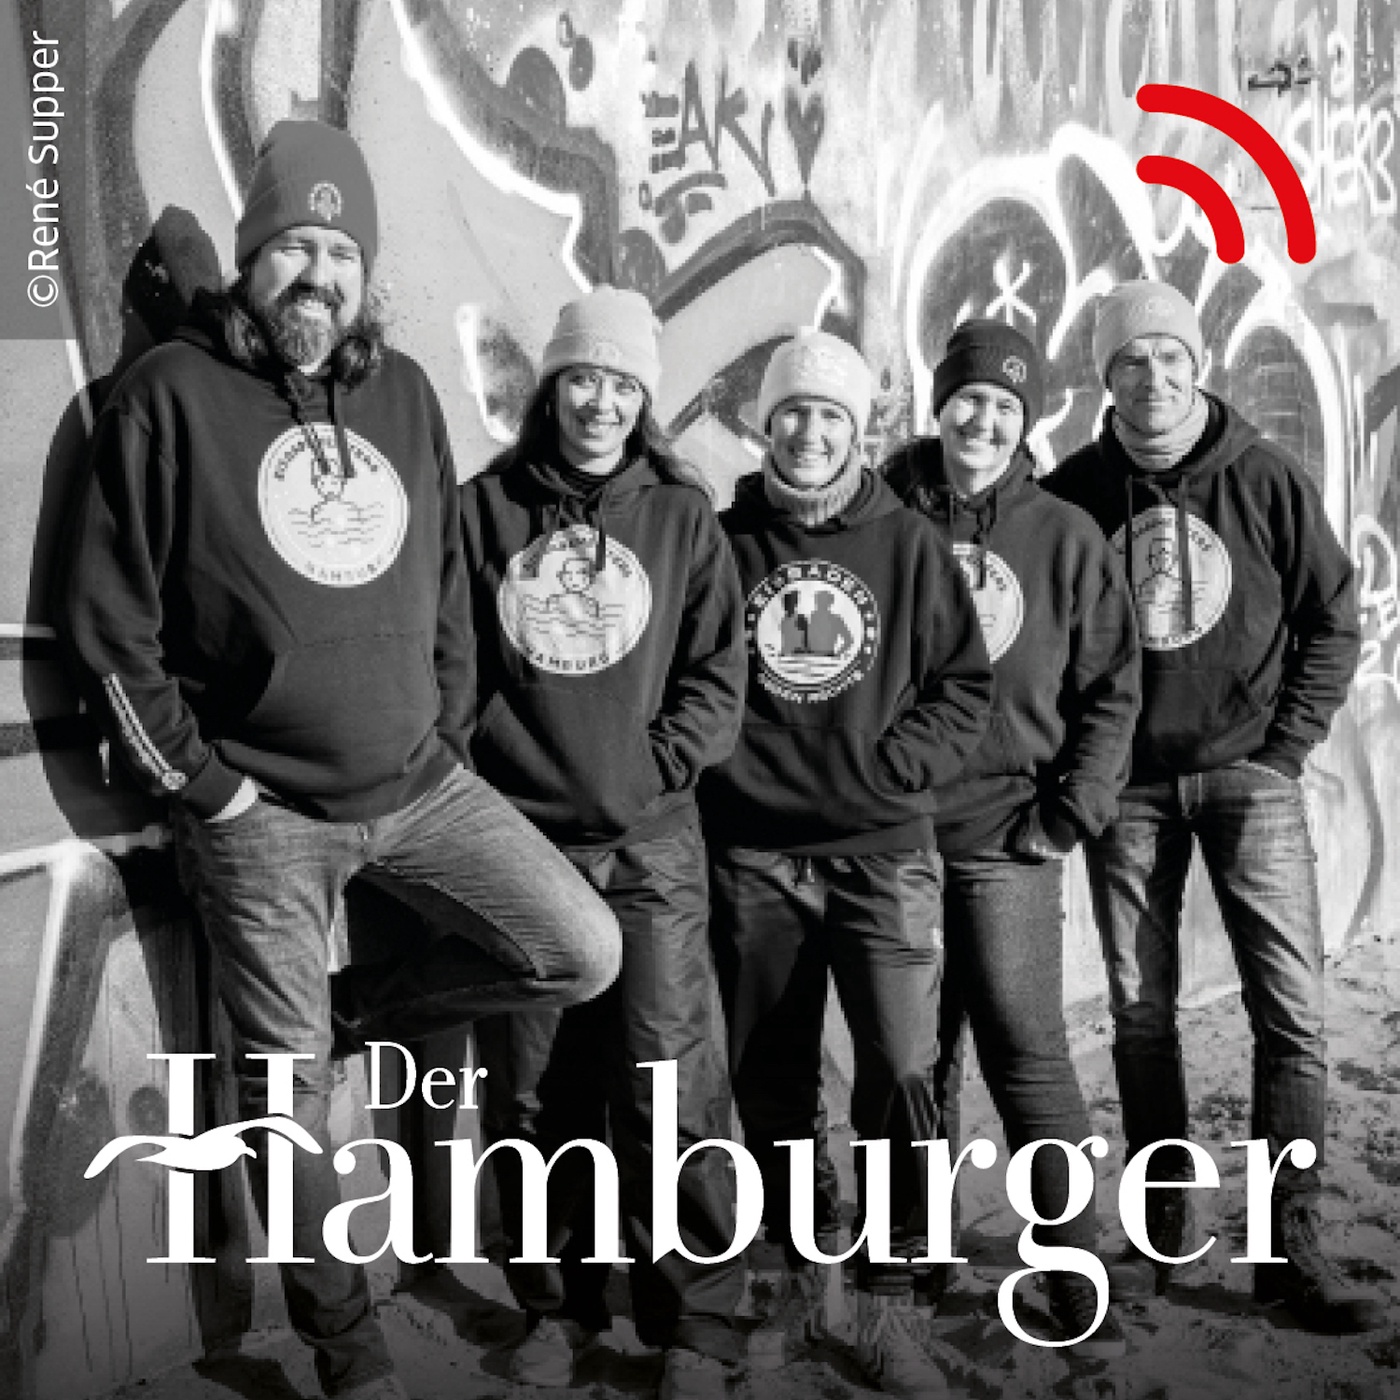 Die Wärmespender: Die Eisbademeisters Hamburg